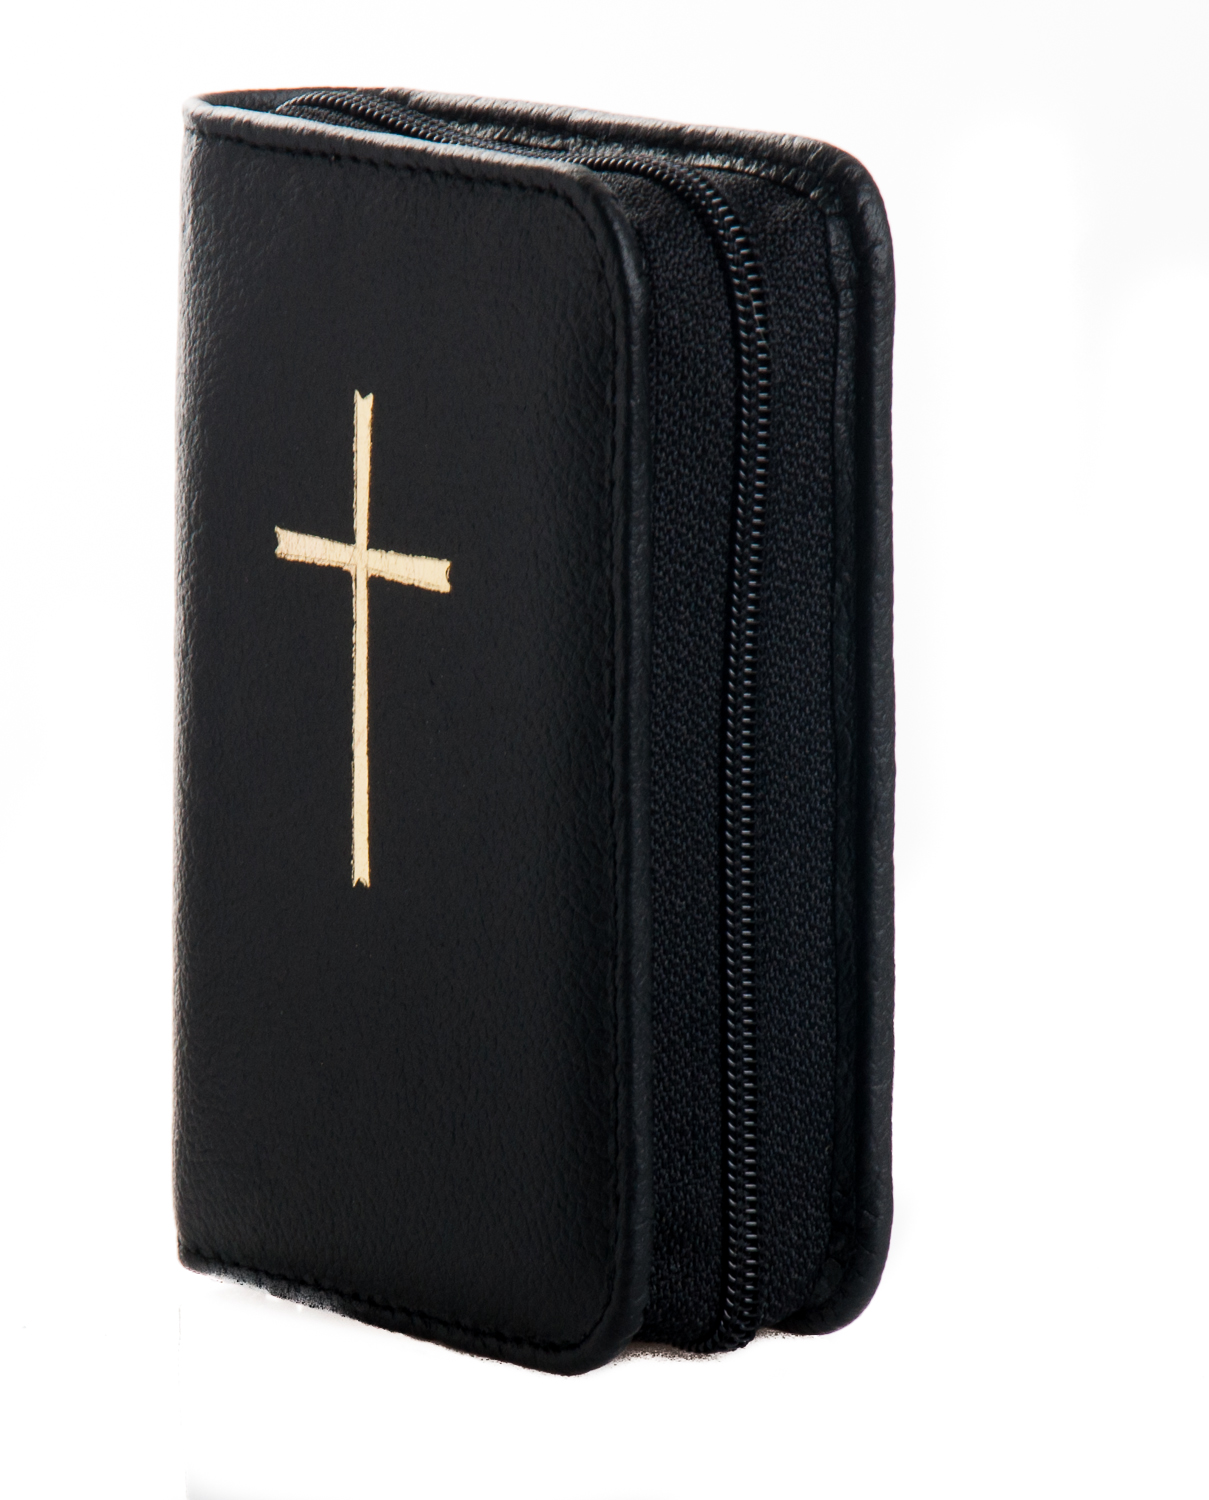 Gotteslobhülle für Taschenbuchausgabe - Leder mit Kreuzsymbol